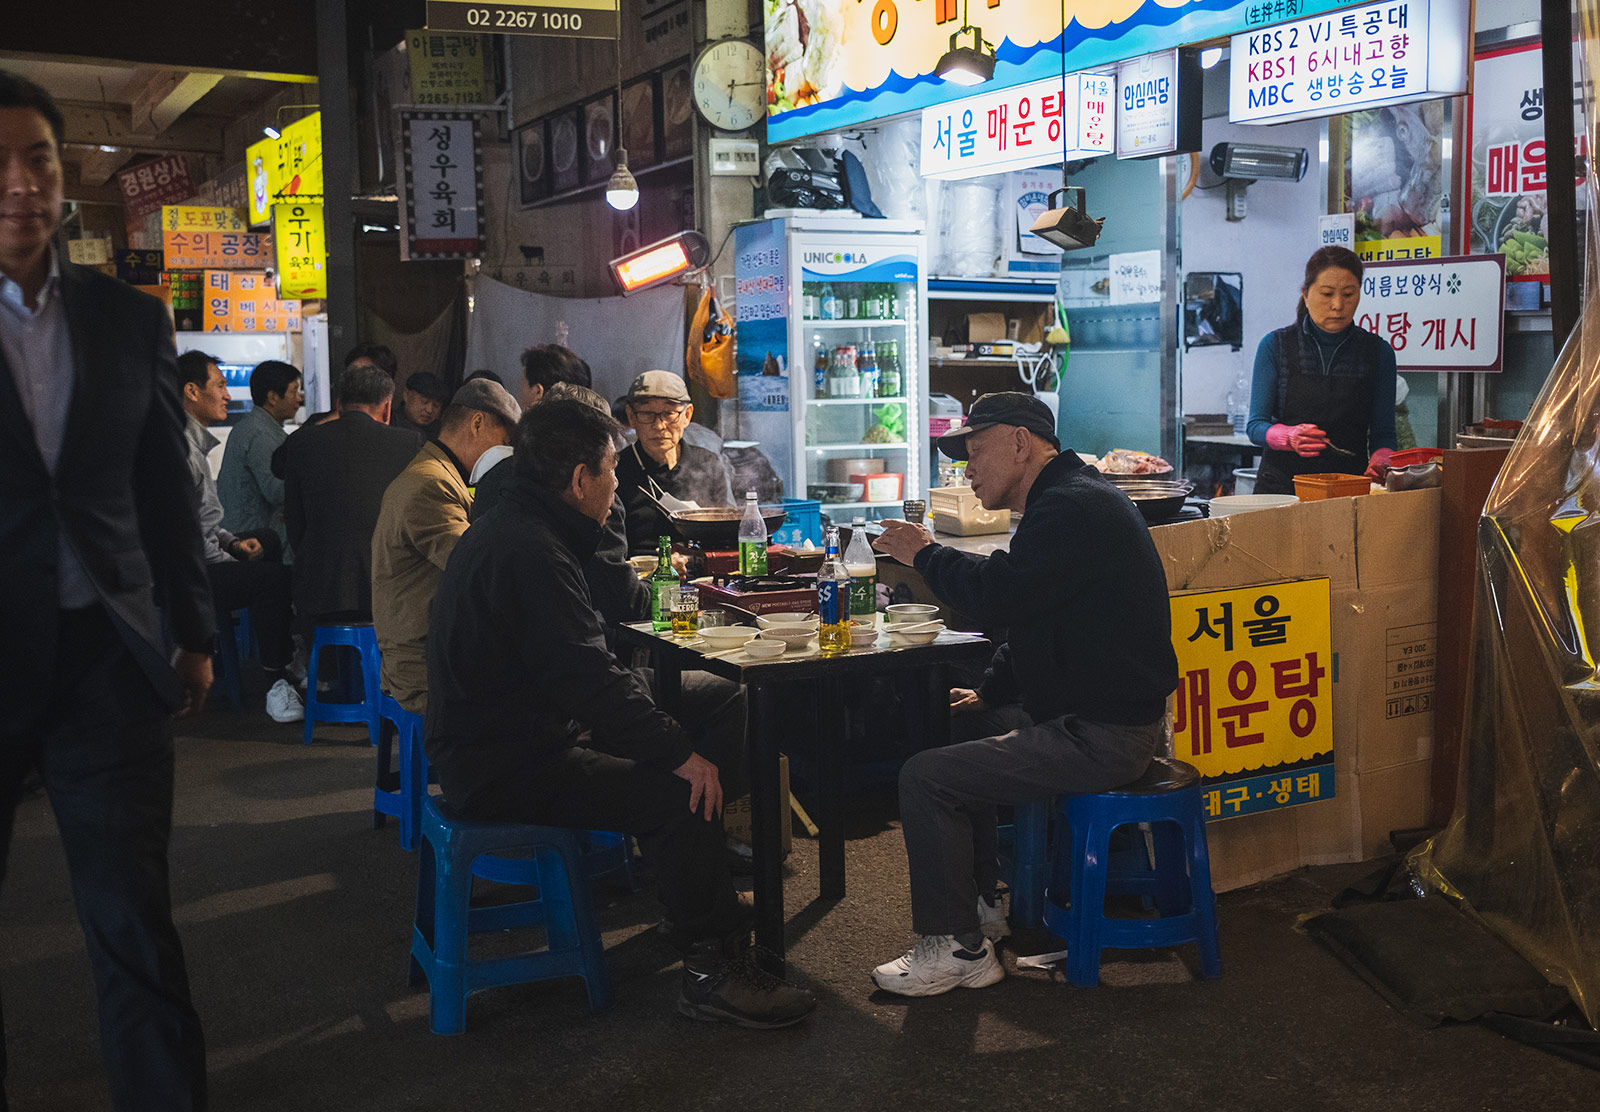 Men dining at indoor market